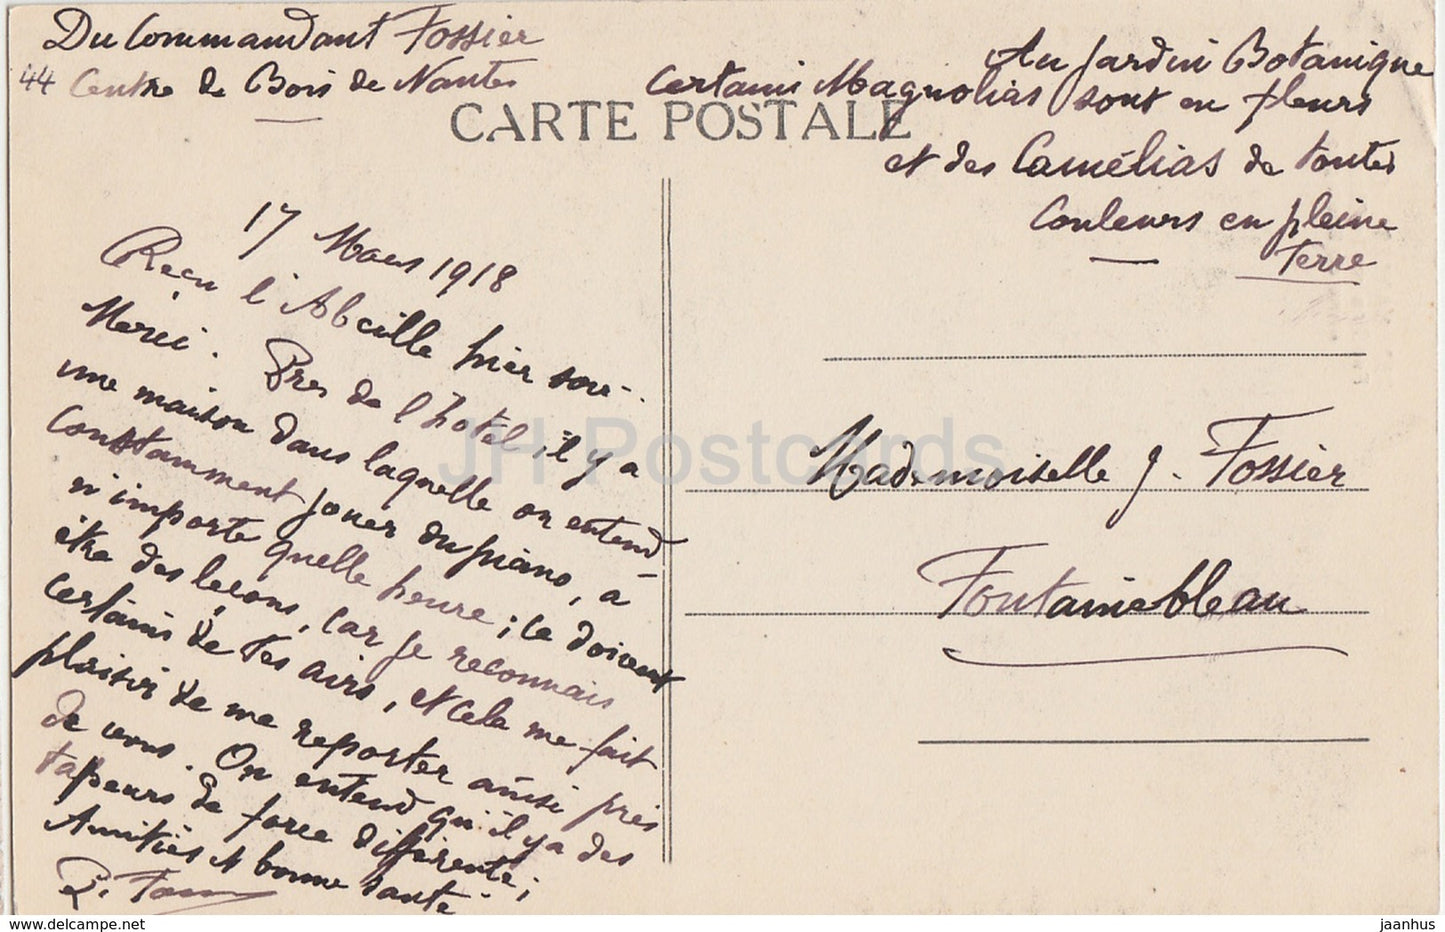 Nantes - Cour du Château Fenetre de la Chambre - château - 797 - carte postale ancienne - 1918 - France - utilisé